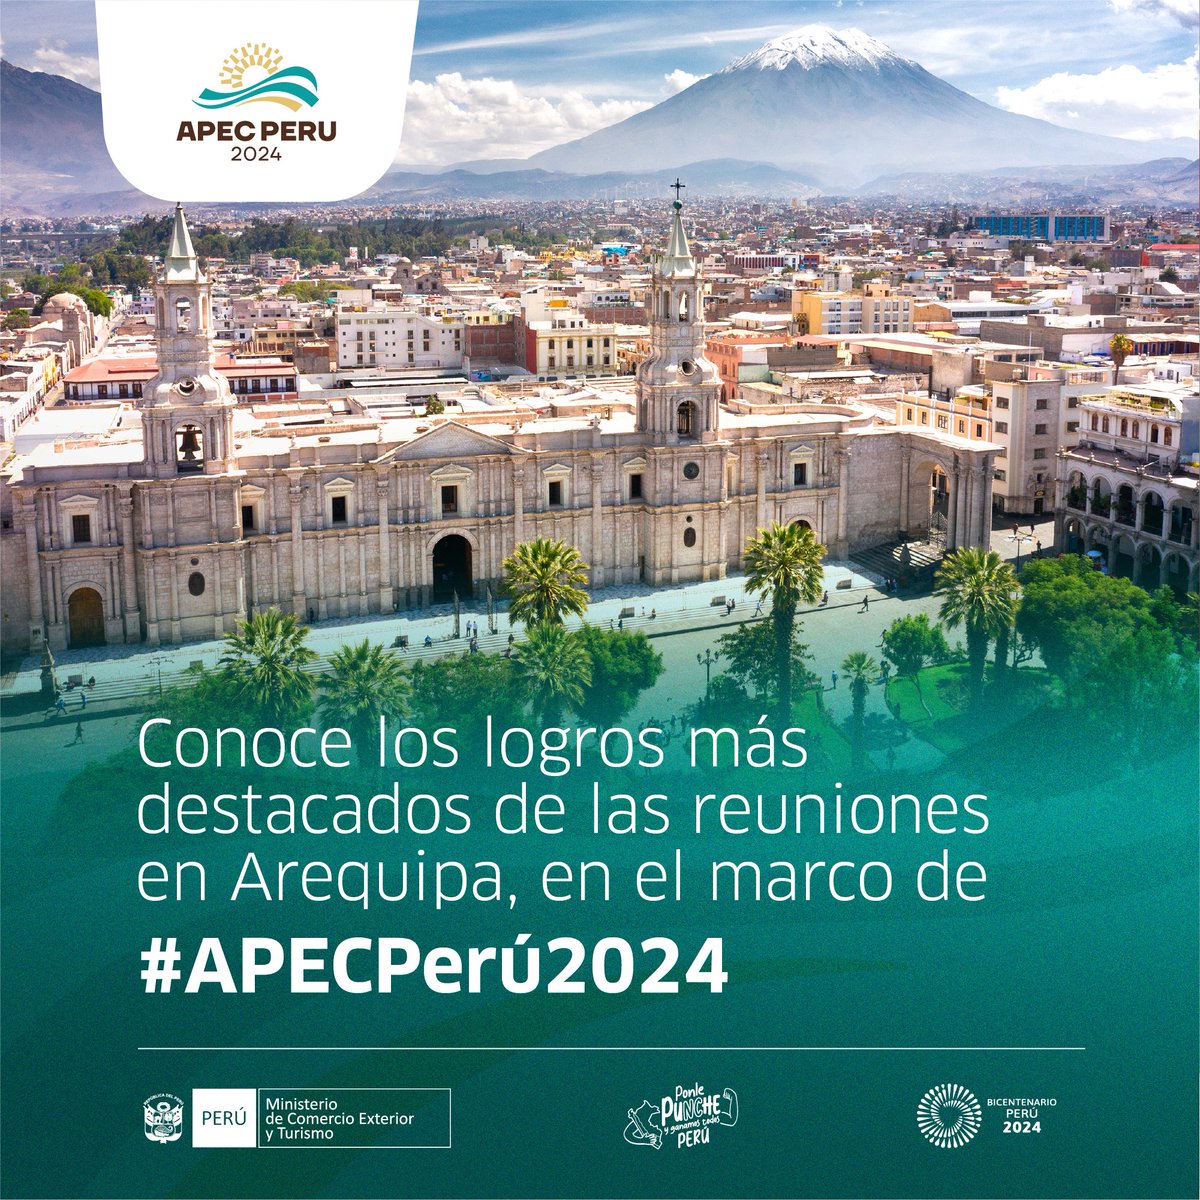 El #Mincetur ha logrado importantes hitos durante la reunión de altos funcionares en #Arequipa en el marco de #ApecPerú2024.

Conoce cuáles son los más destacados 👇